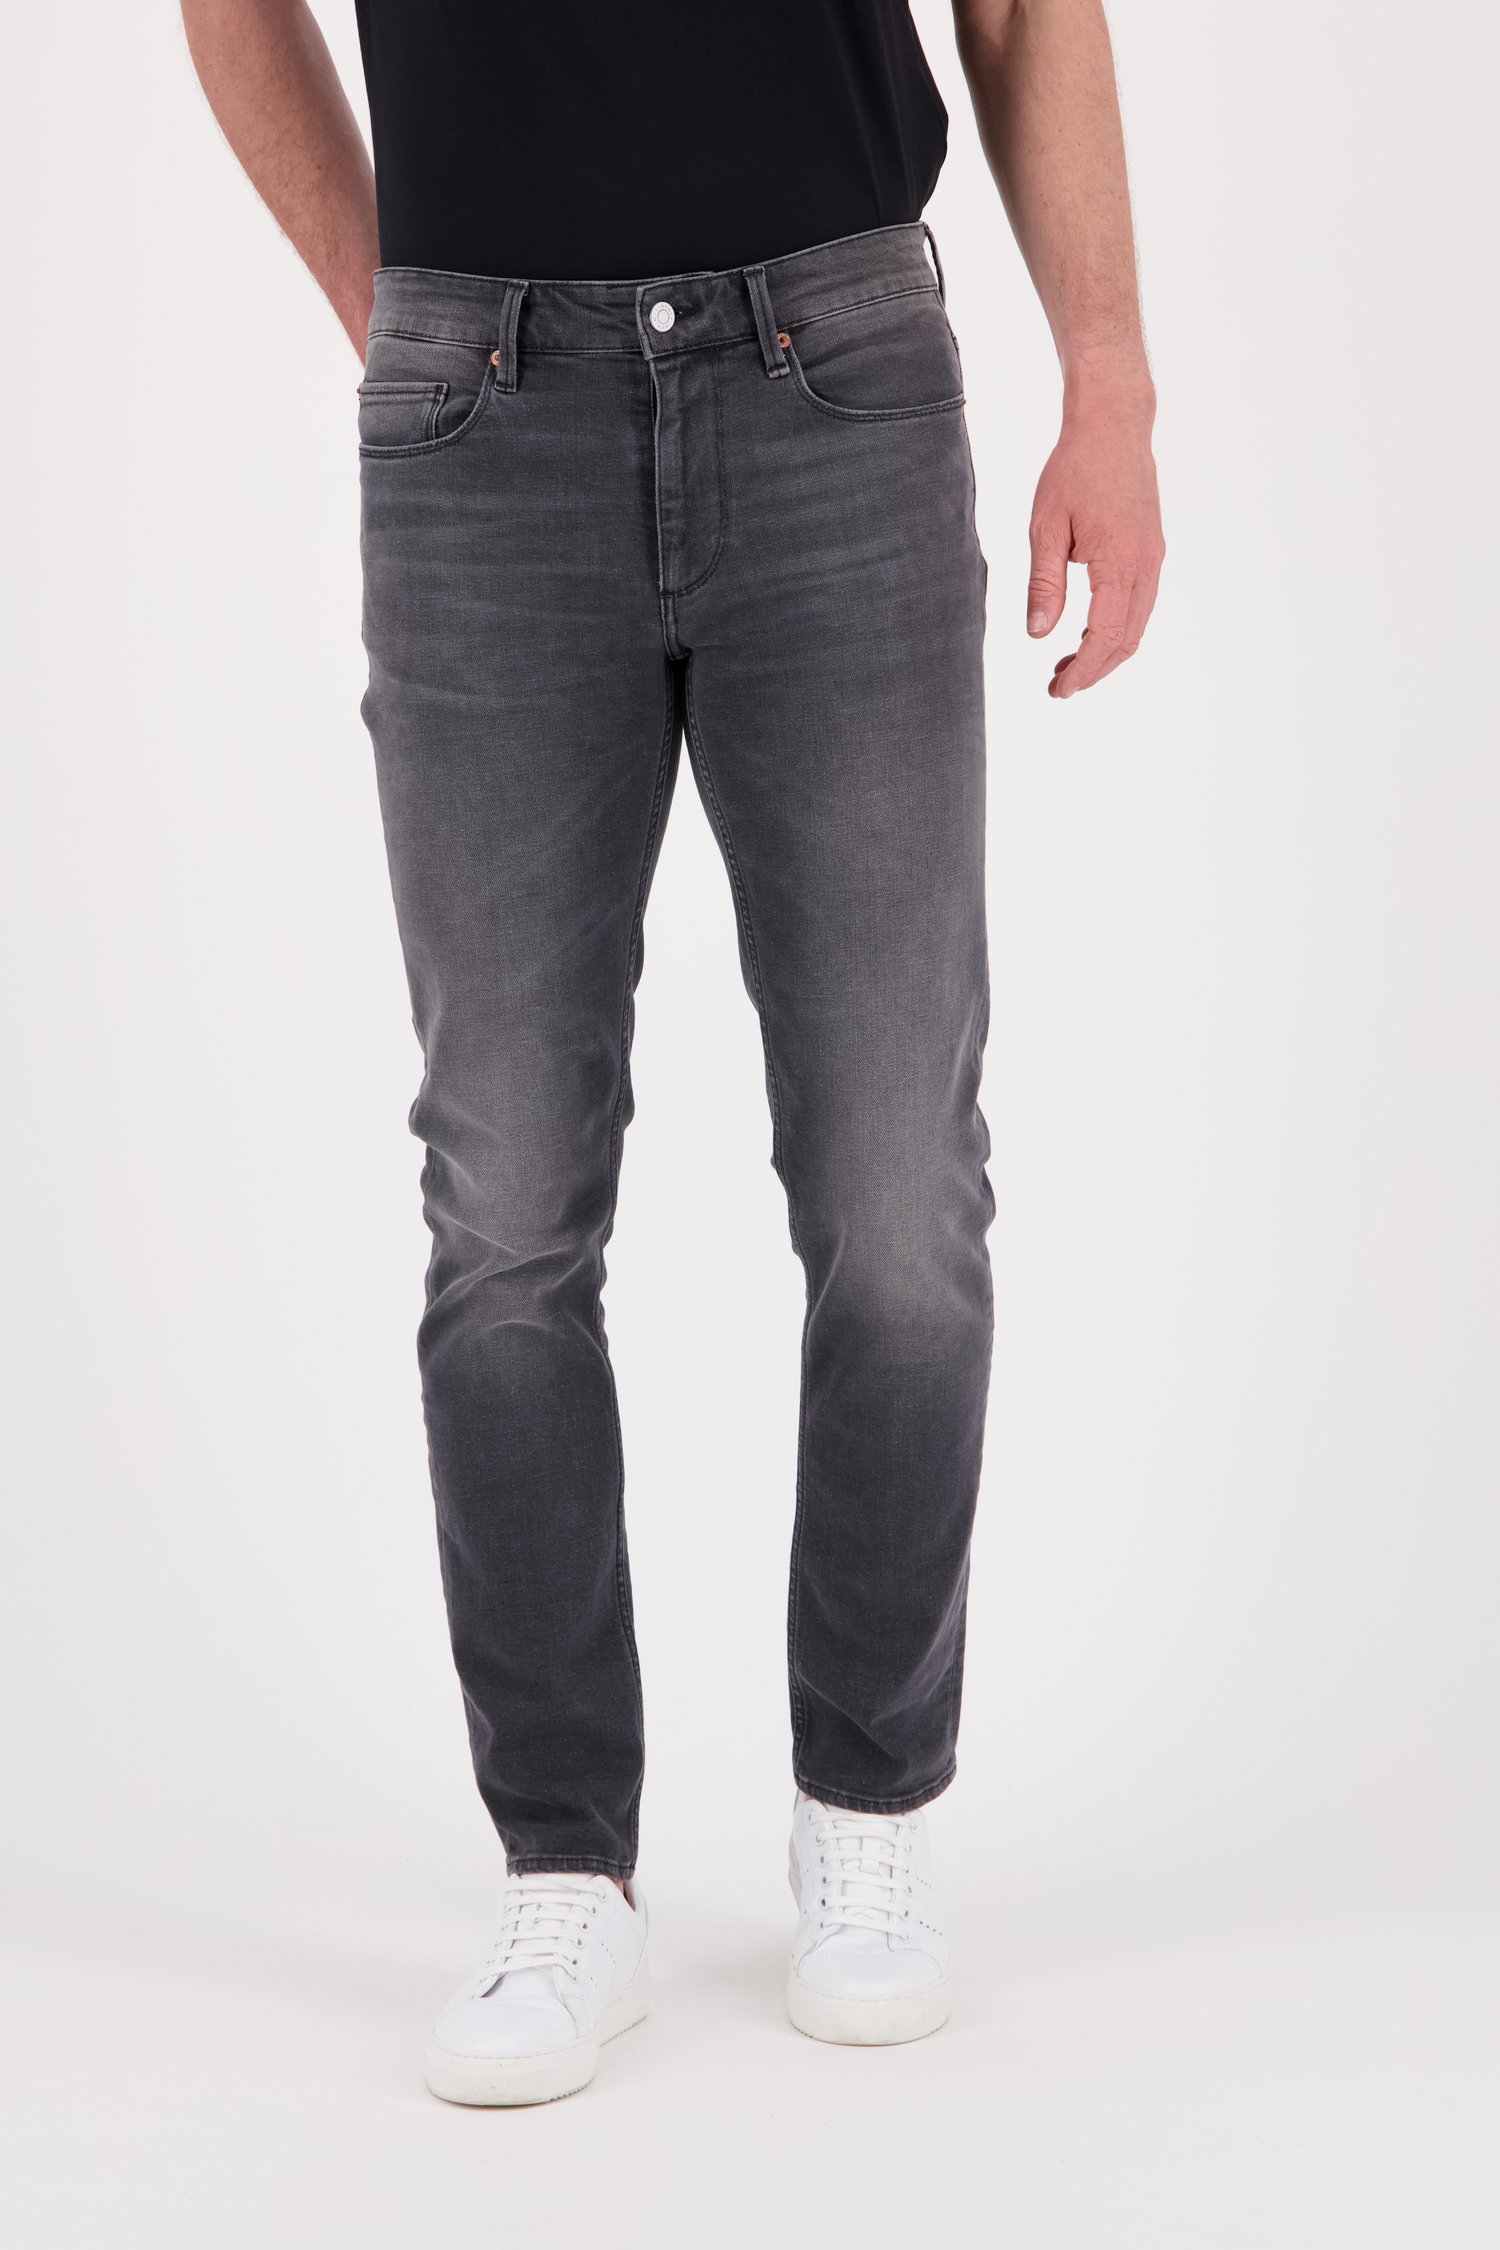 Jeans gris - Tim – slim fit - L34  de Liberty Island Denim pour Hommes